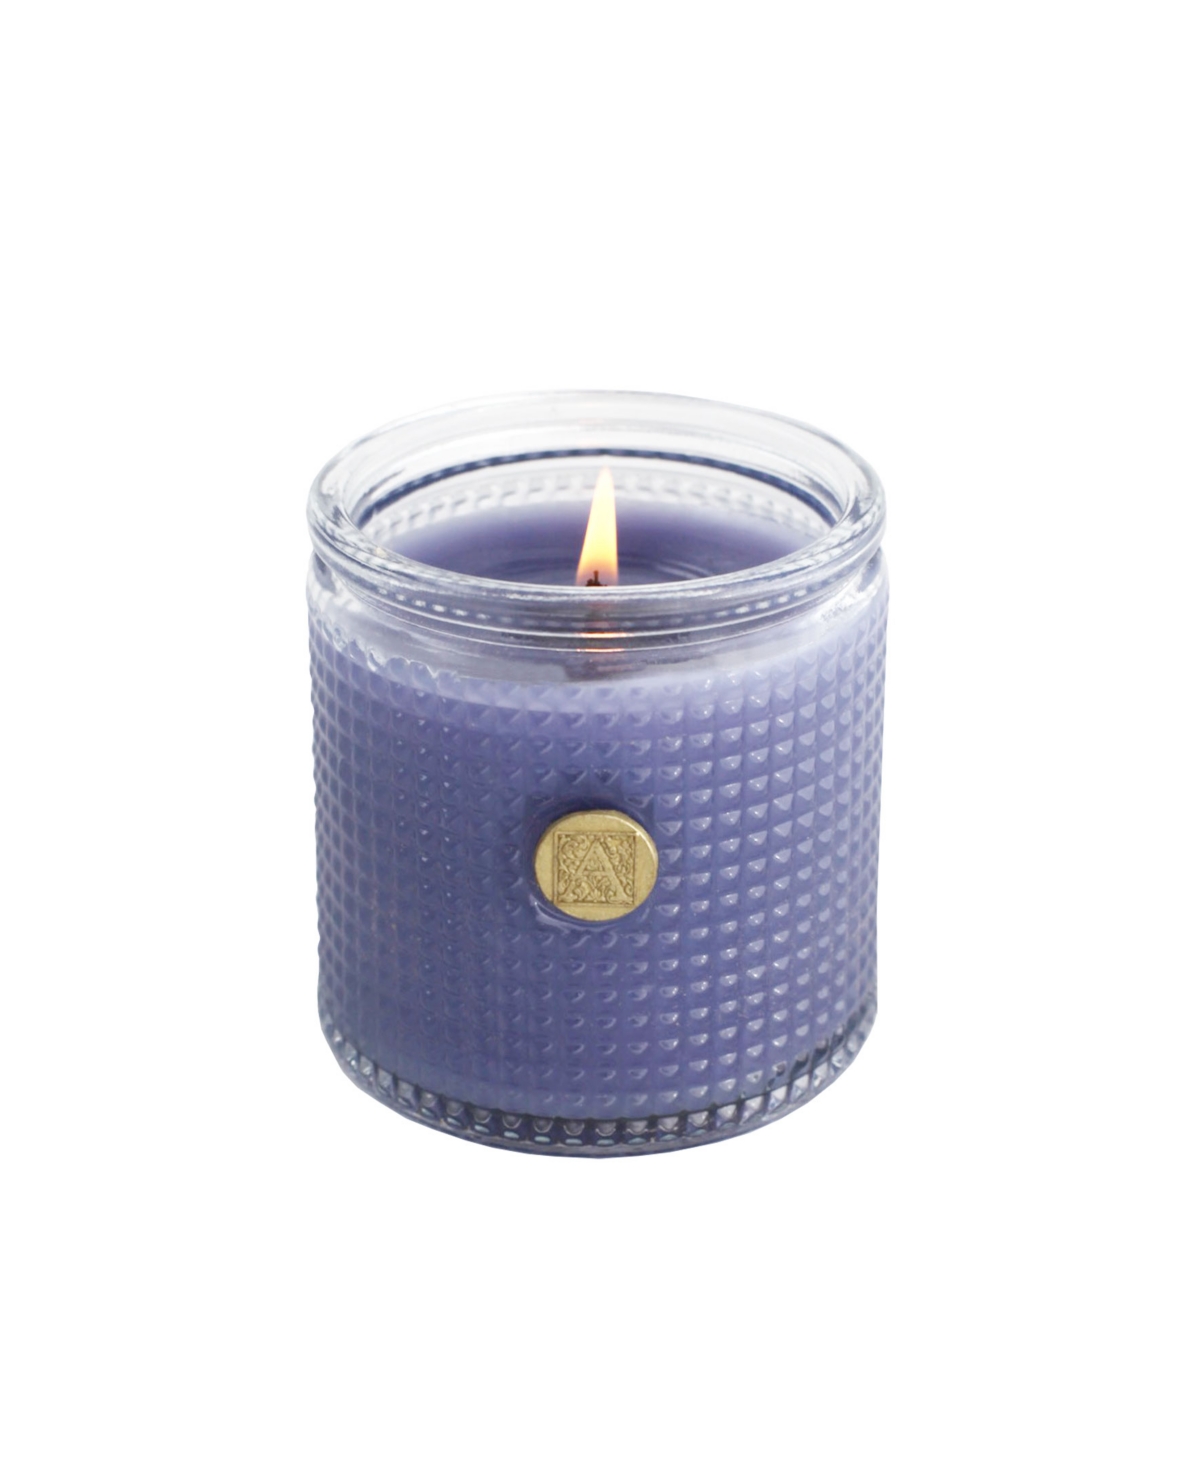 Elegant Essentials Lavender Bouquet Textured Glass Candle, 6 oz - Light Purple